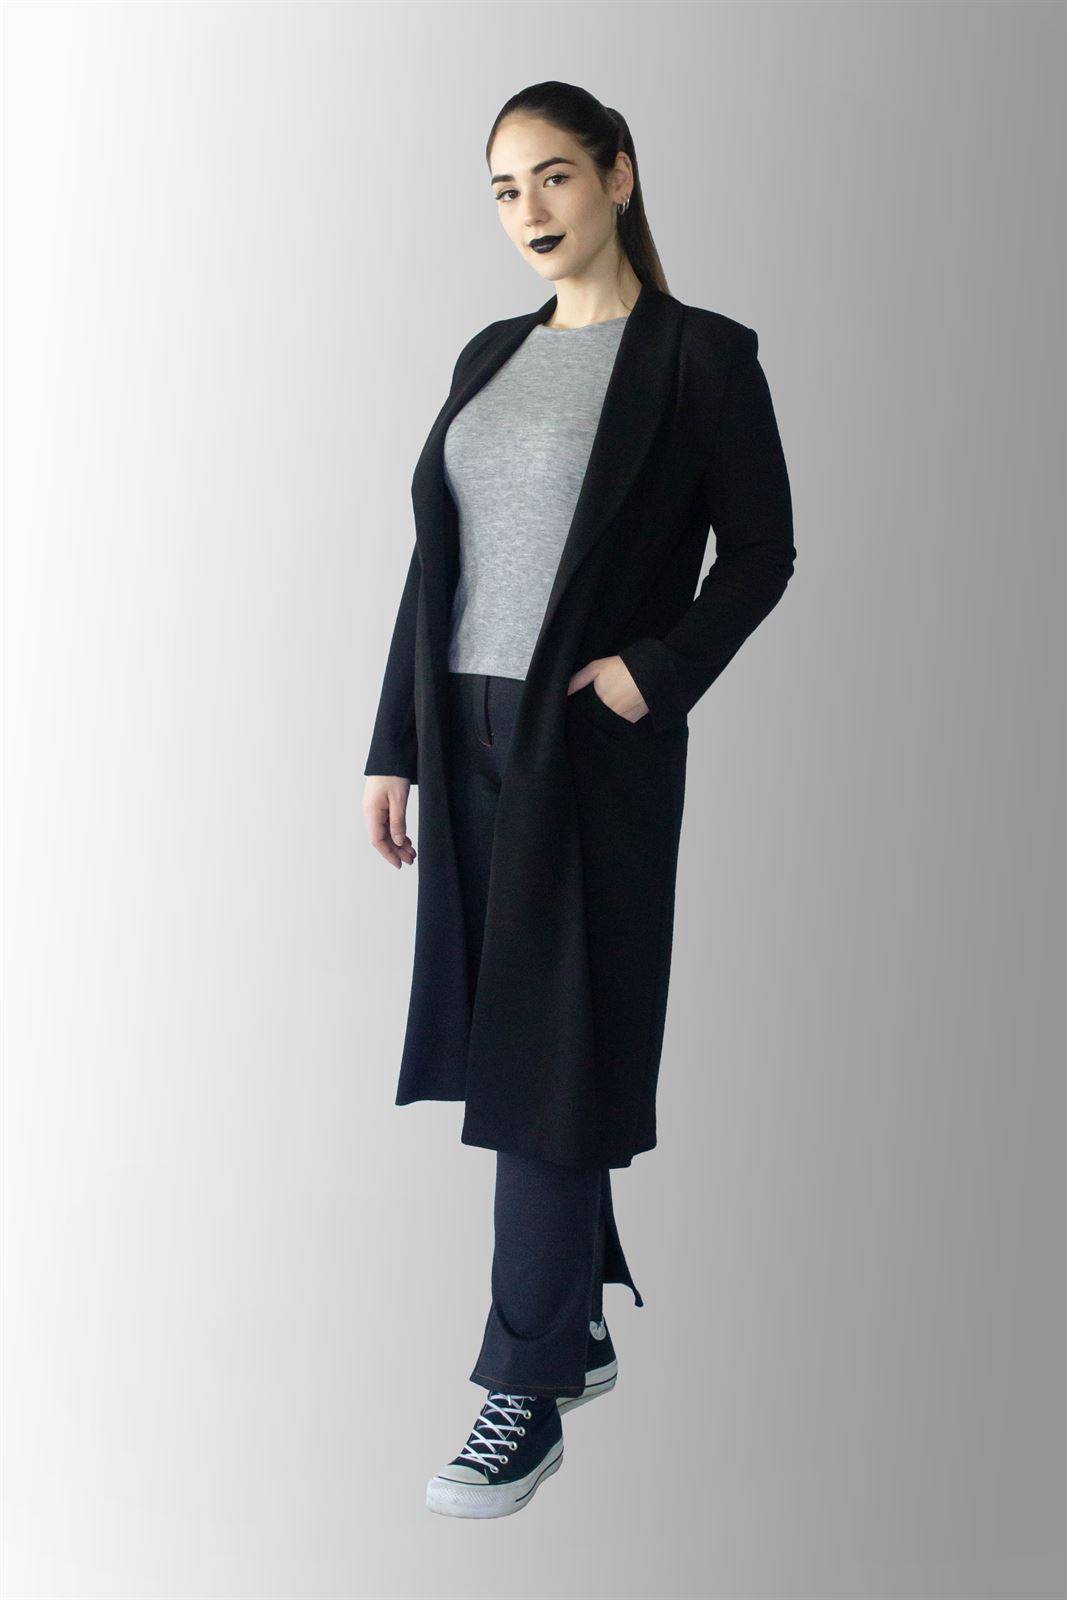 Abrigo Leiden chica largo de cuello esmoquin color negro, sin forrar, de corte recto y manga sastre - Imagen 1